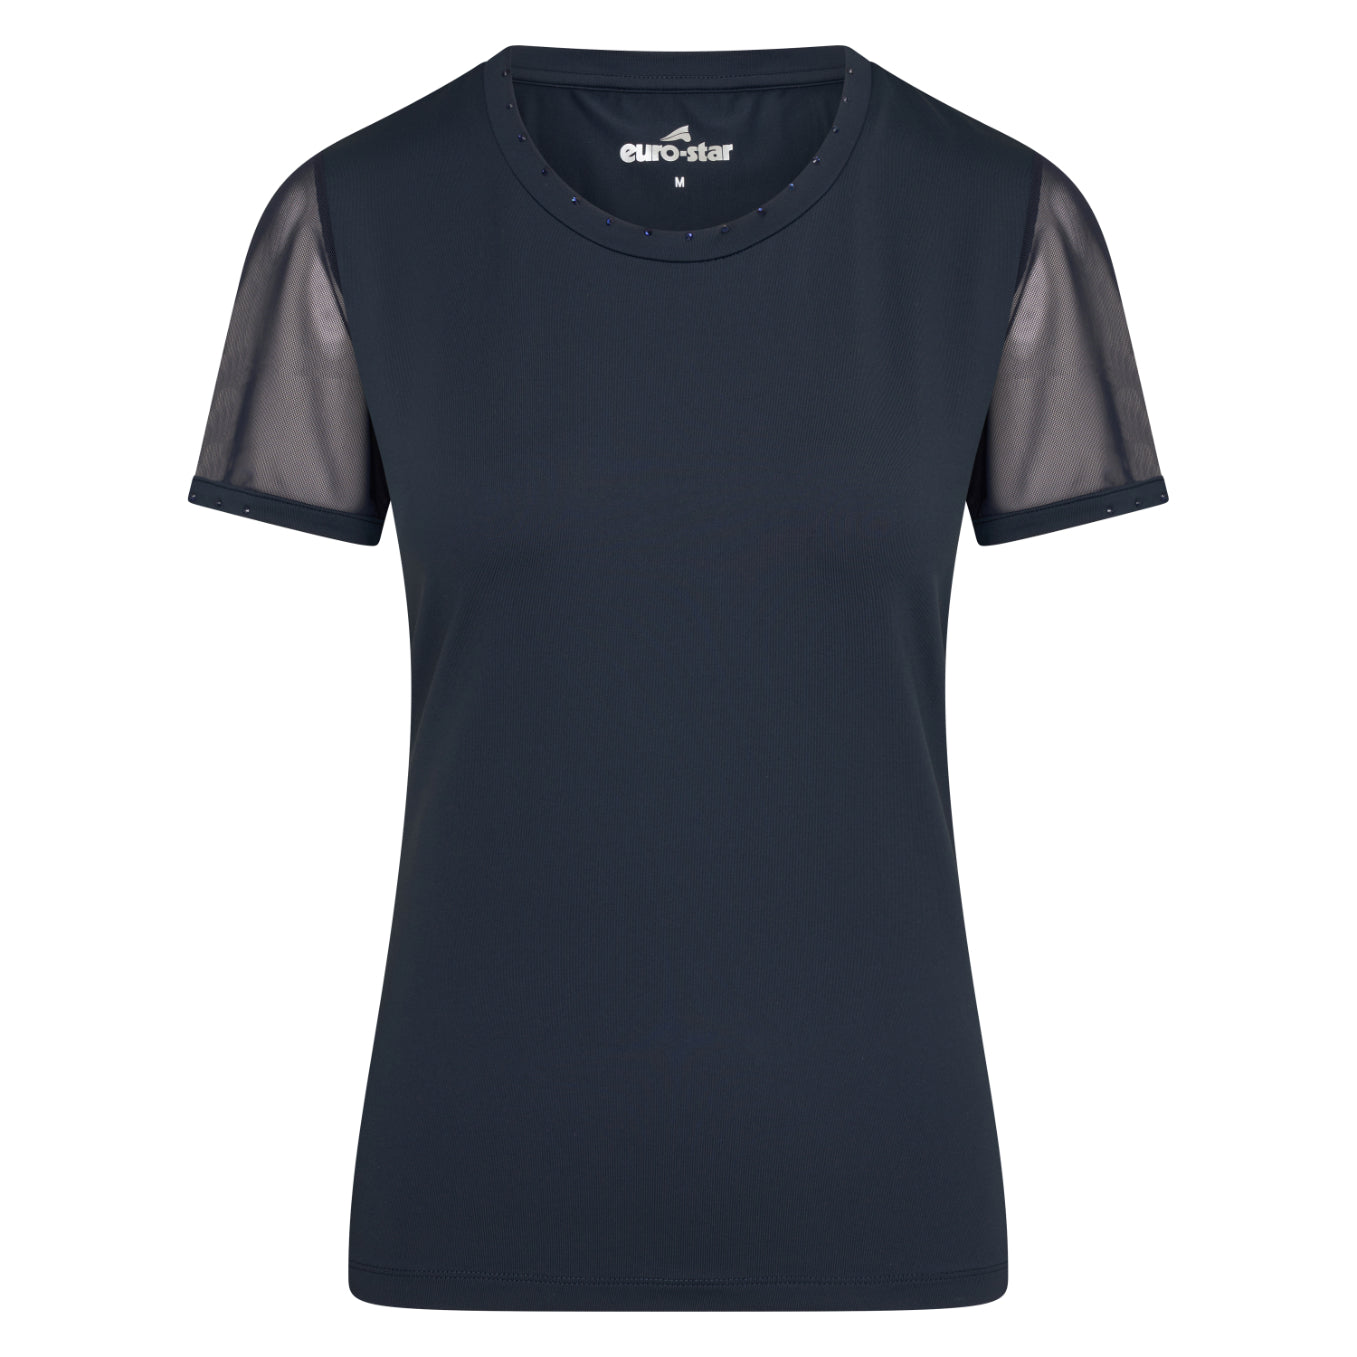 Euro-Star Lucia, sval trendig t-shirt med mesh